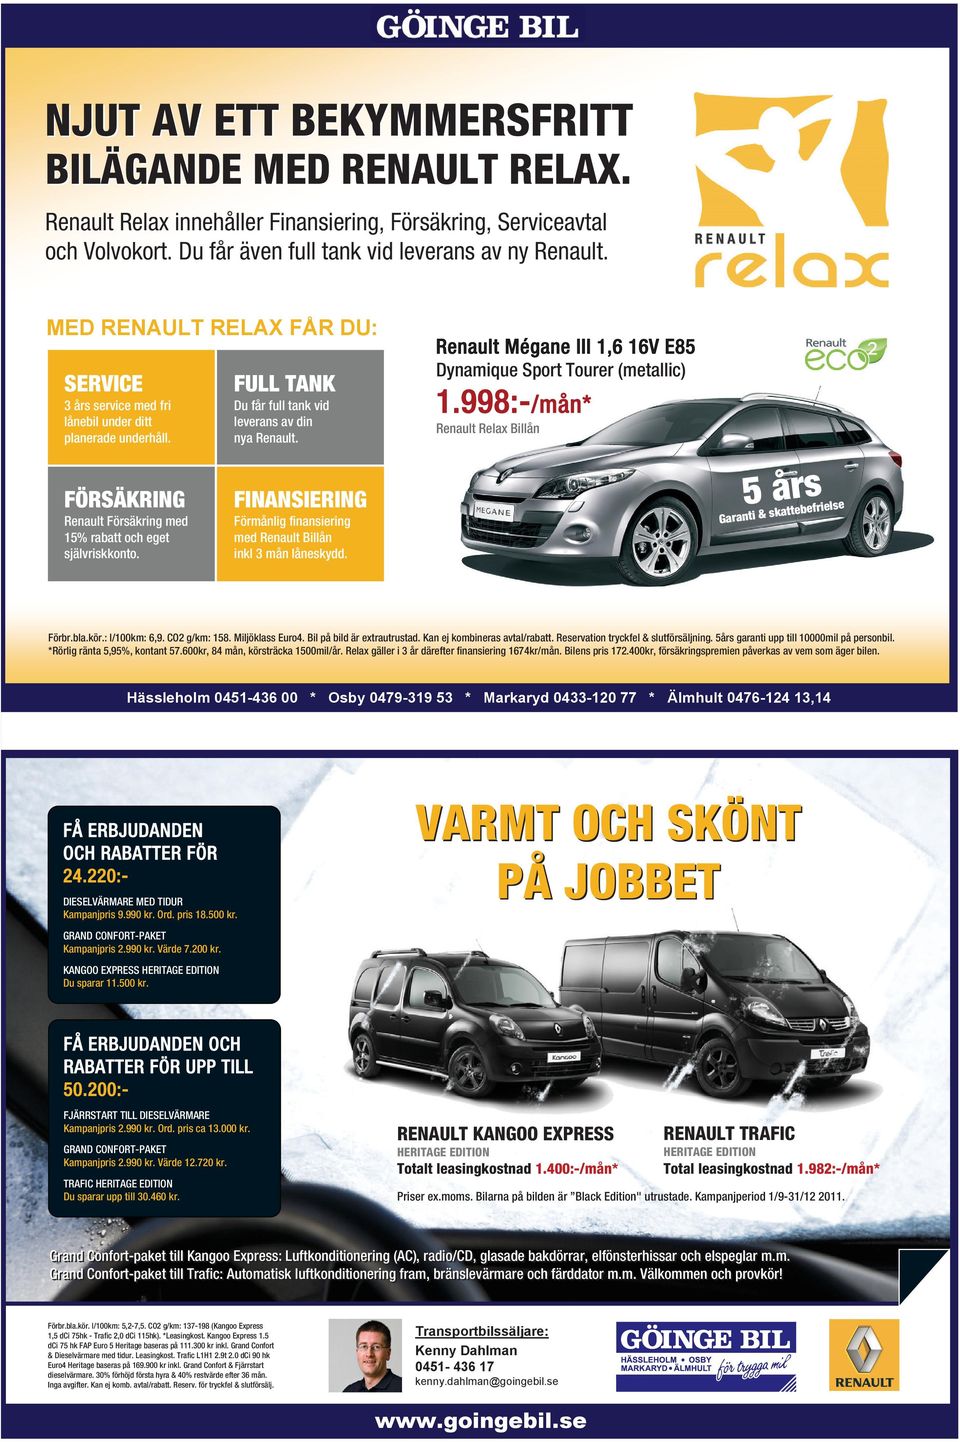 FULL TANK Du får full tank vid leverans av din nya Renault. FINANSIERING Förmånlig finansiering med Renault Billån inkl 3 mån låneskydd.